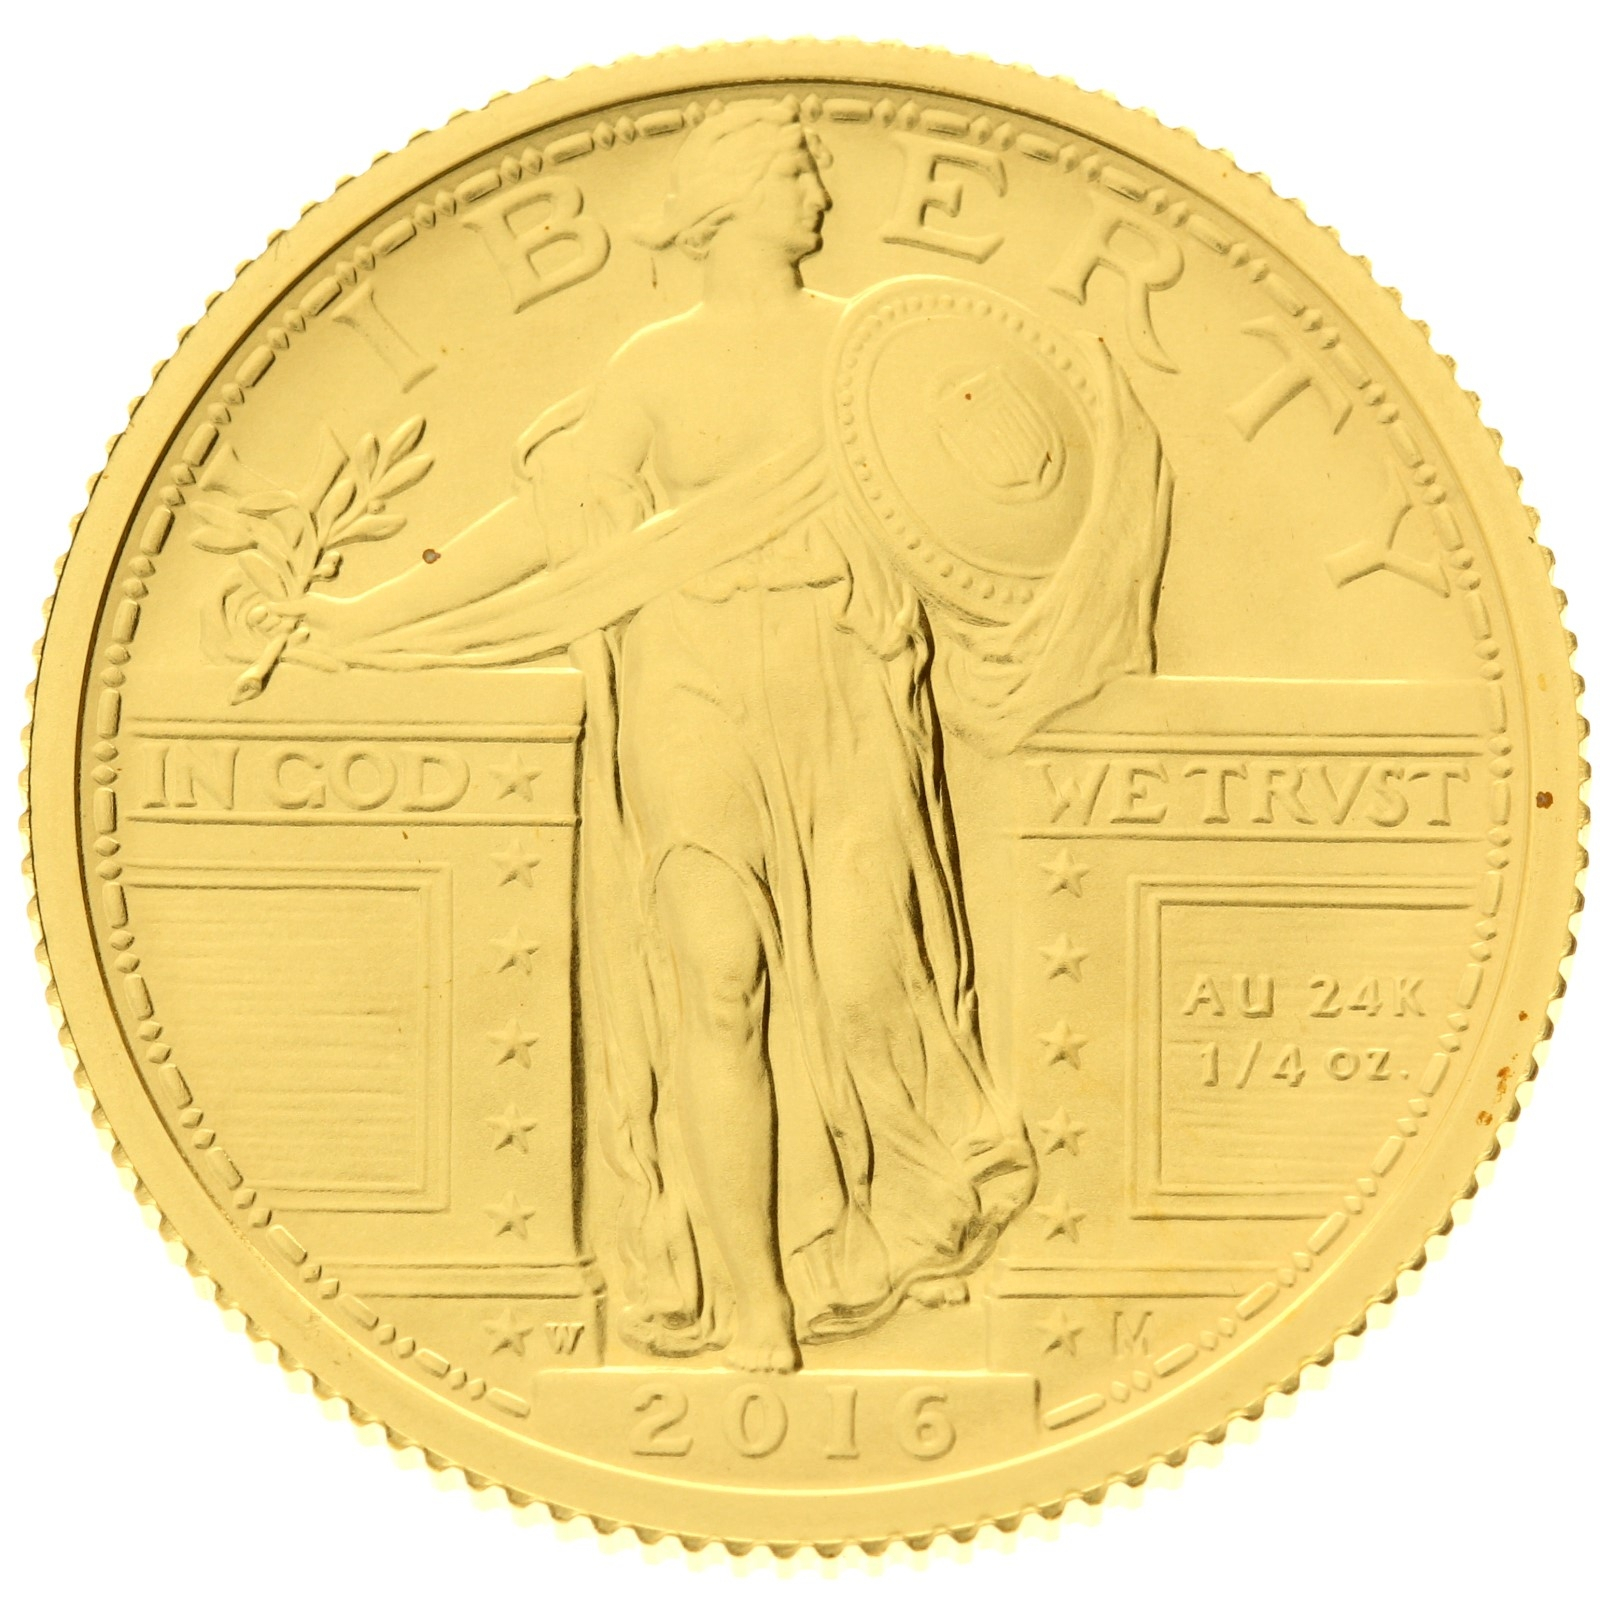 USA - ¼ Dollar - 2016 - Standing Liberty Quarter Centennial - Gold - 1/4oz